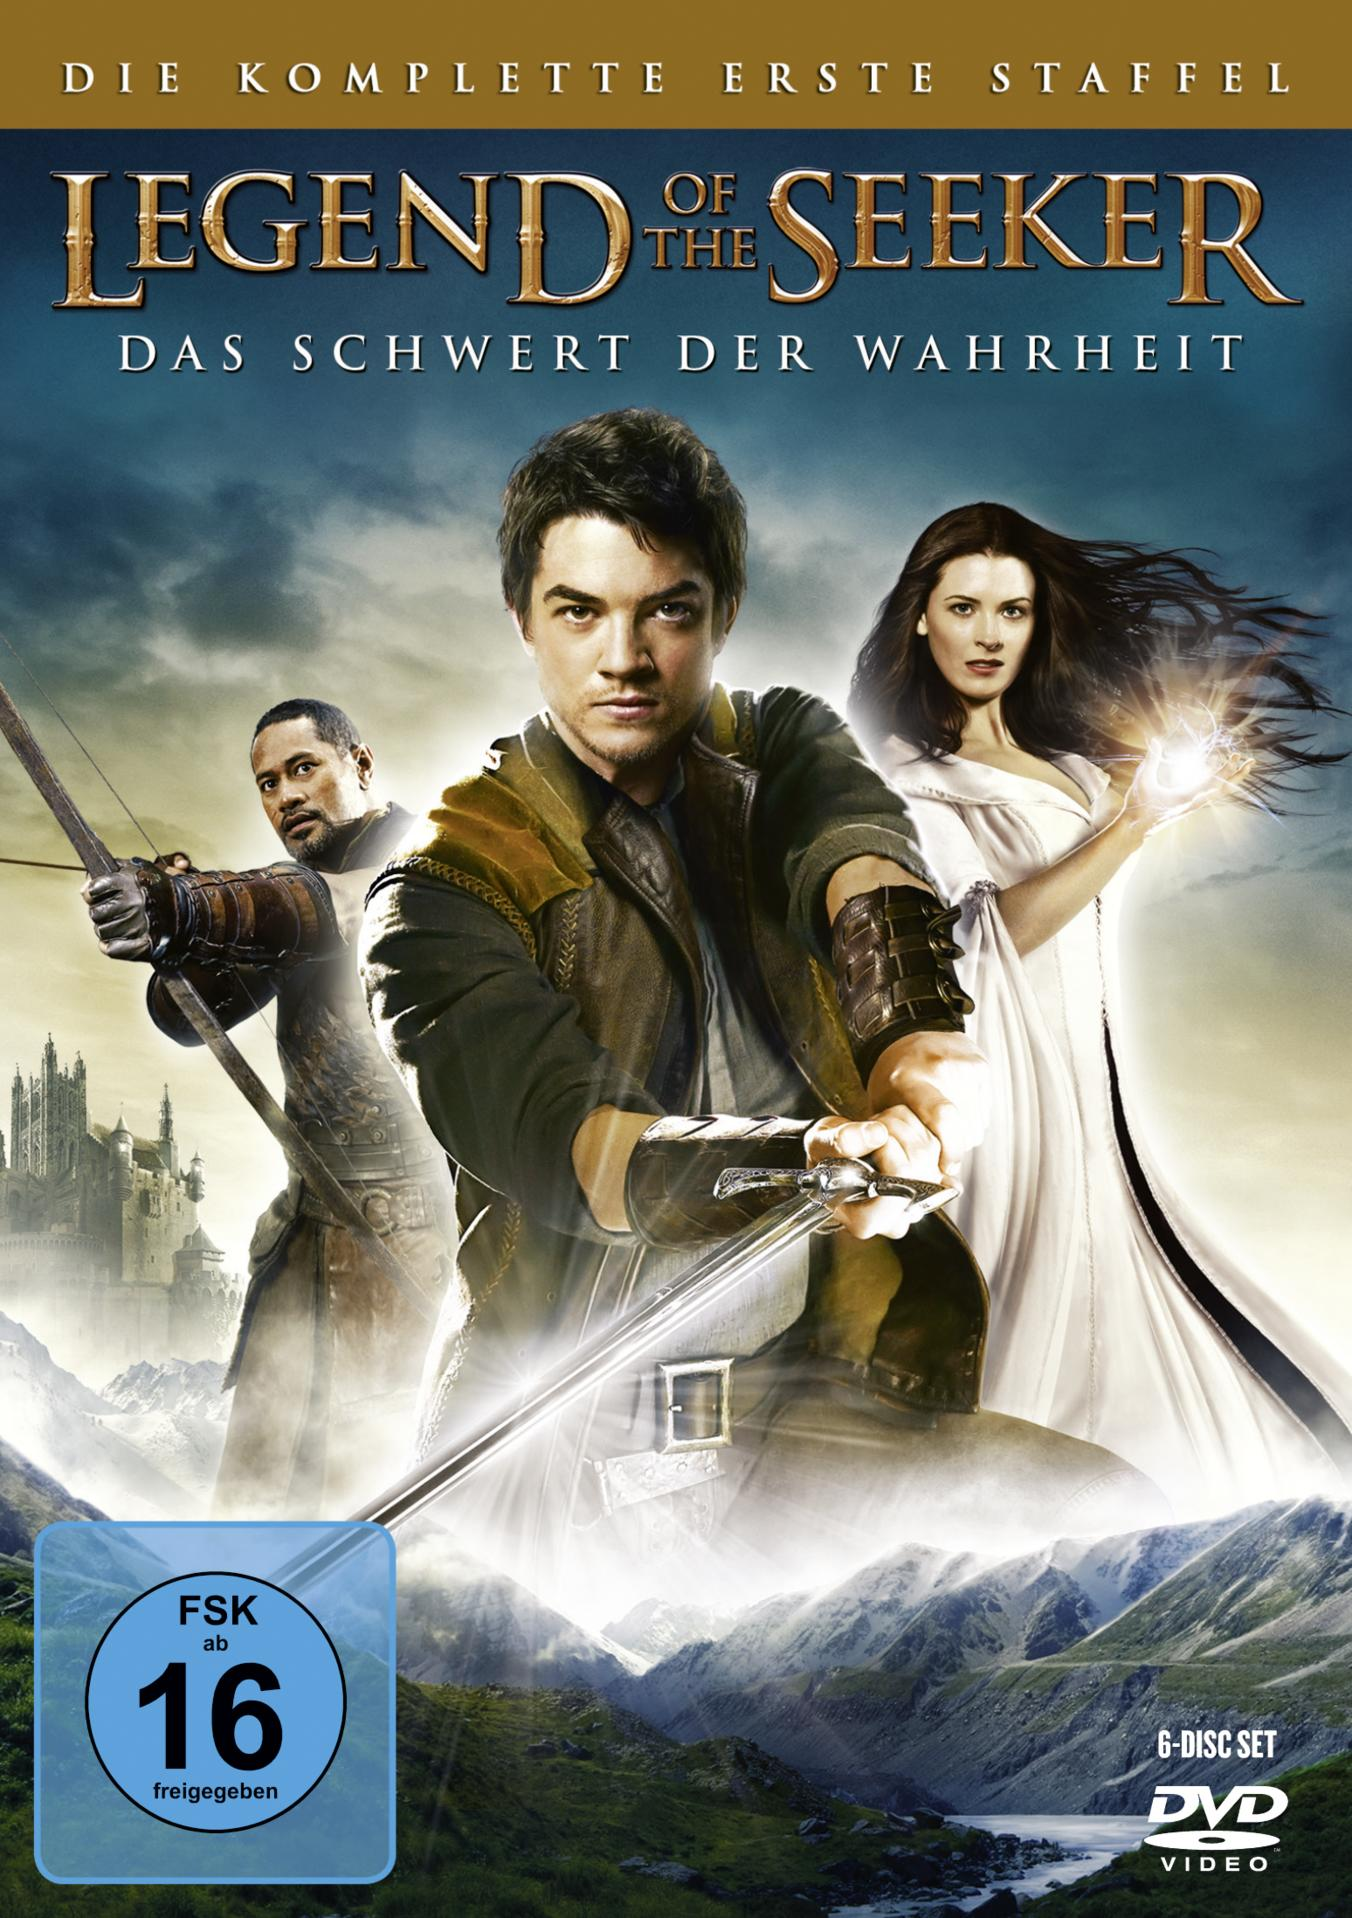 Legend of - komplette erste the DVD Staffel Seeker Die